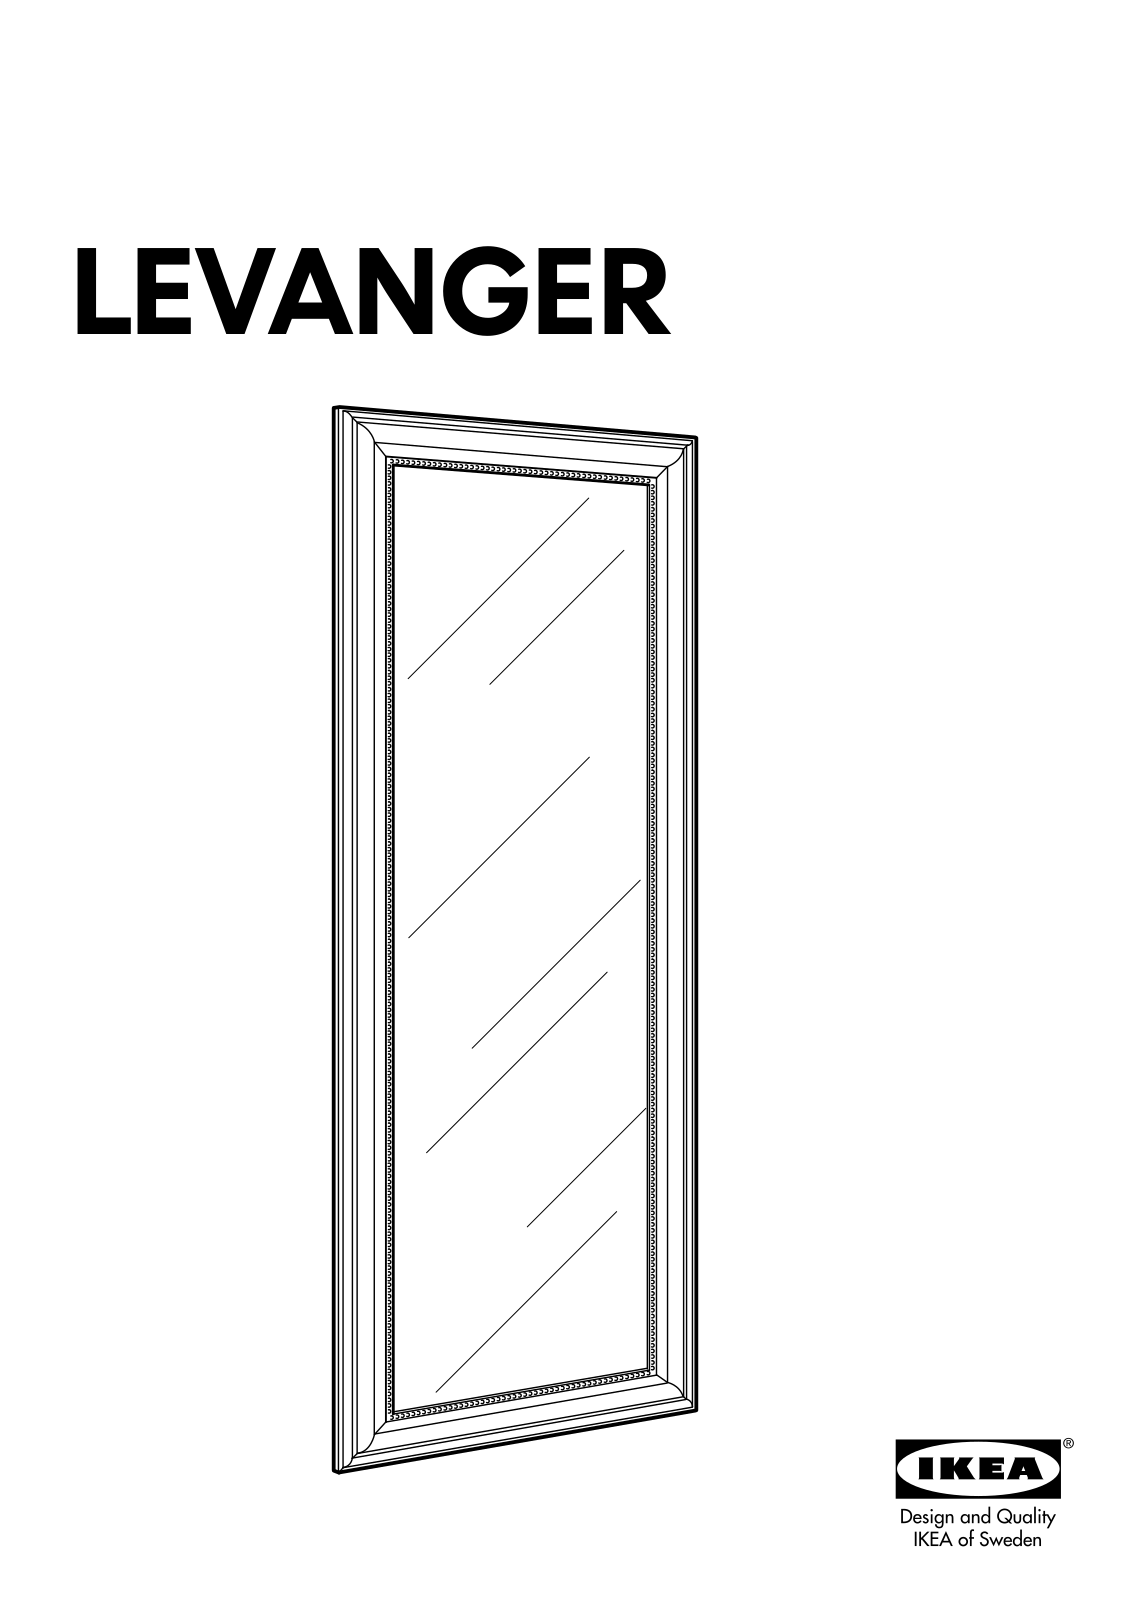 IKEA LEVANGER User Manual